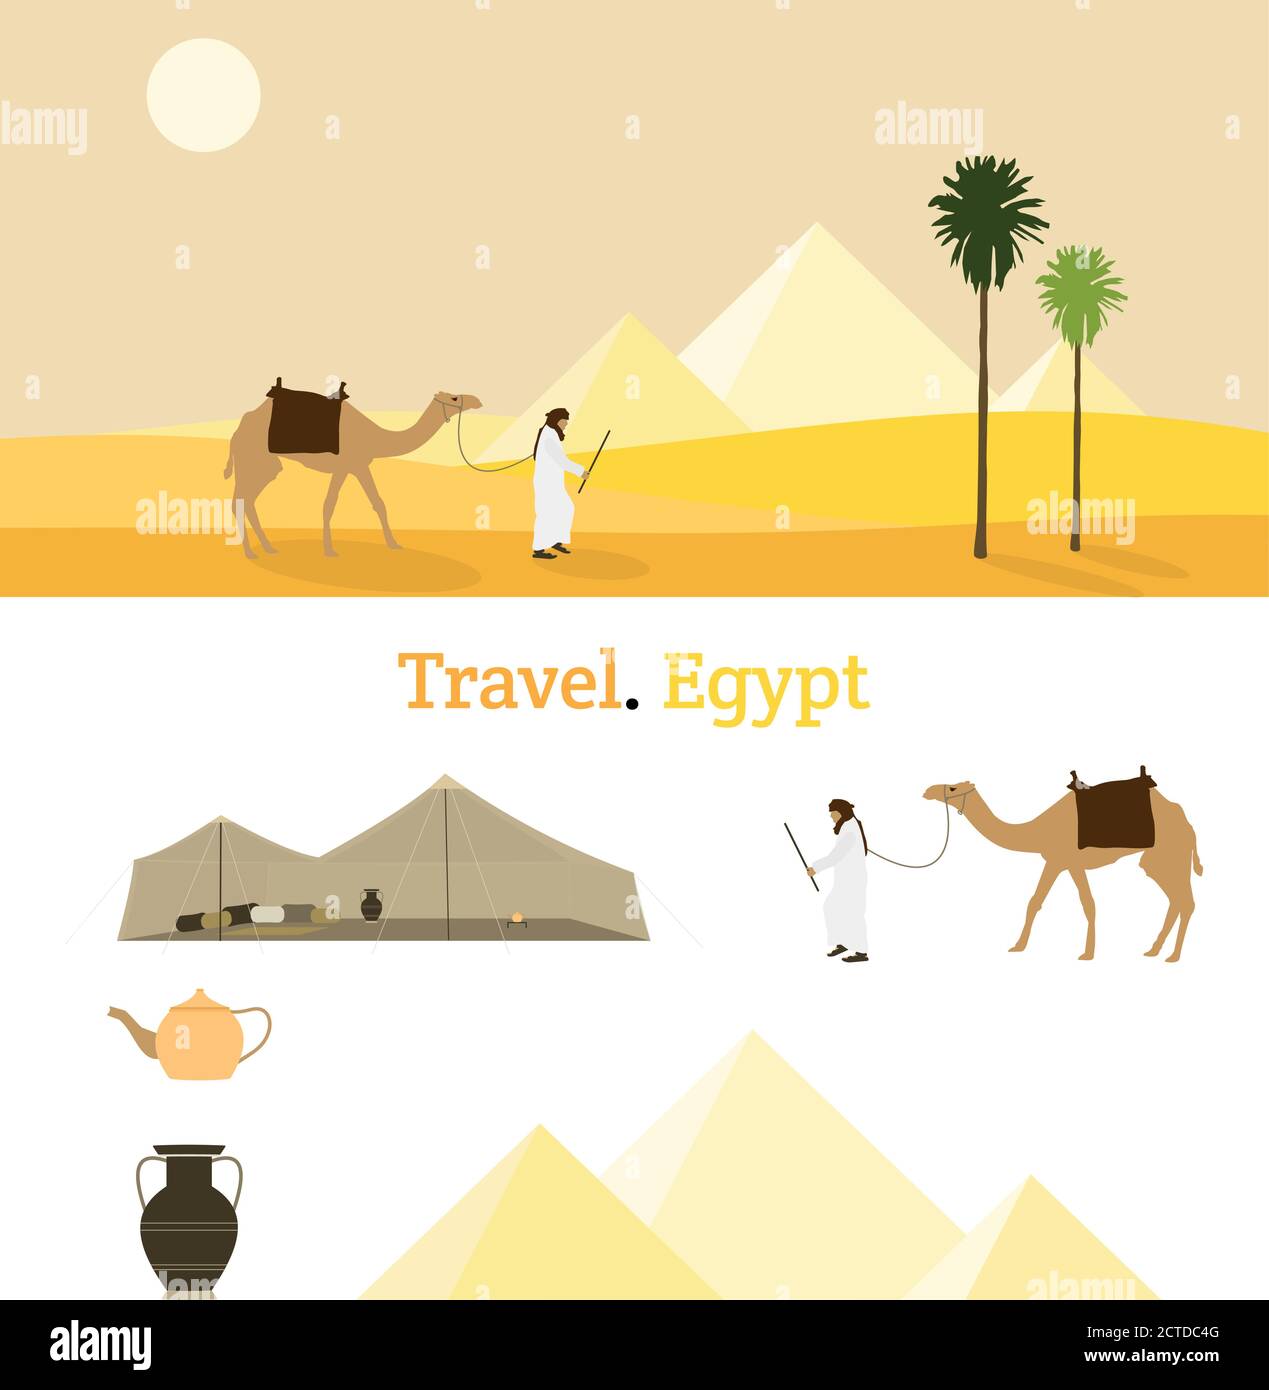 Voyage Égypte. Un bédouin et son chameau dans un paysage désertique jaune avec des pyramides en arrière-plan Illustration de Vecteur